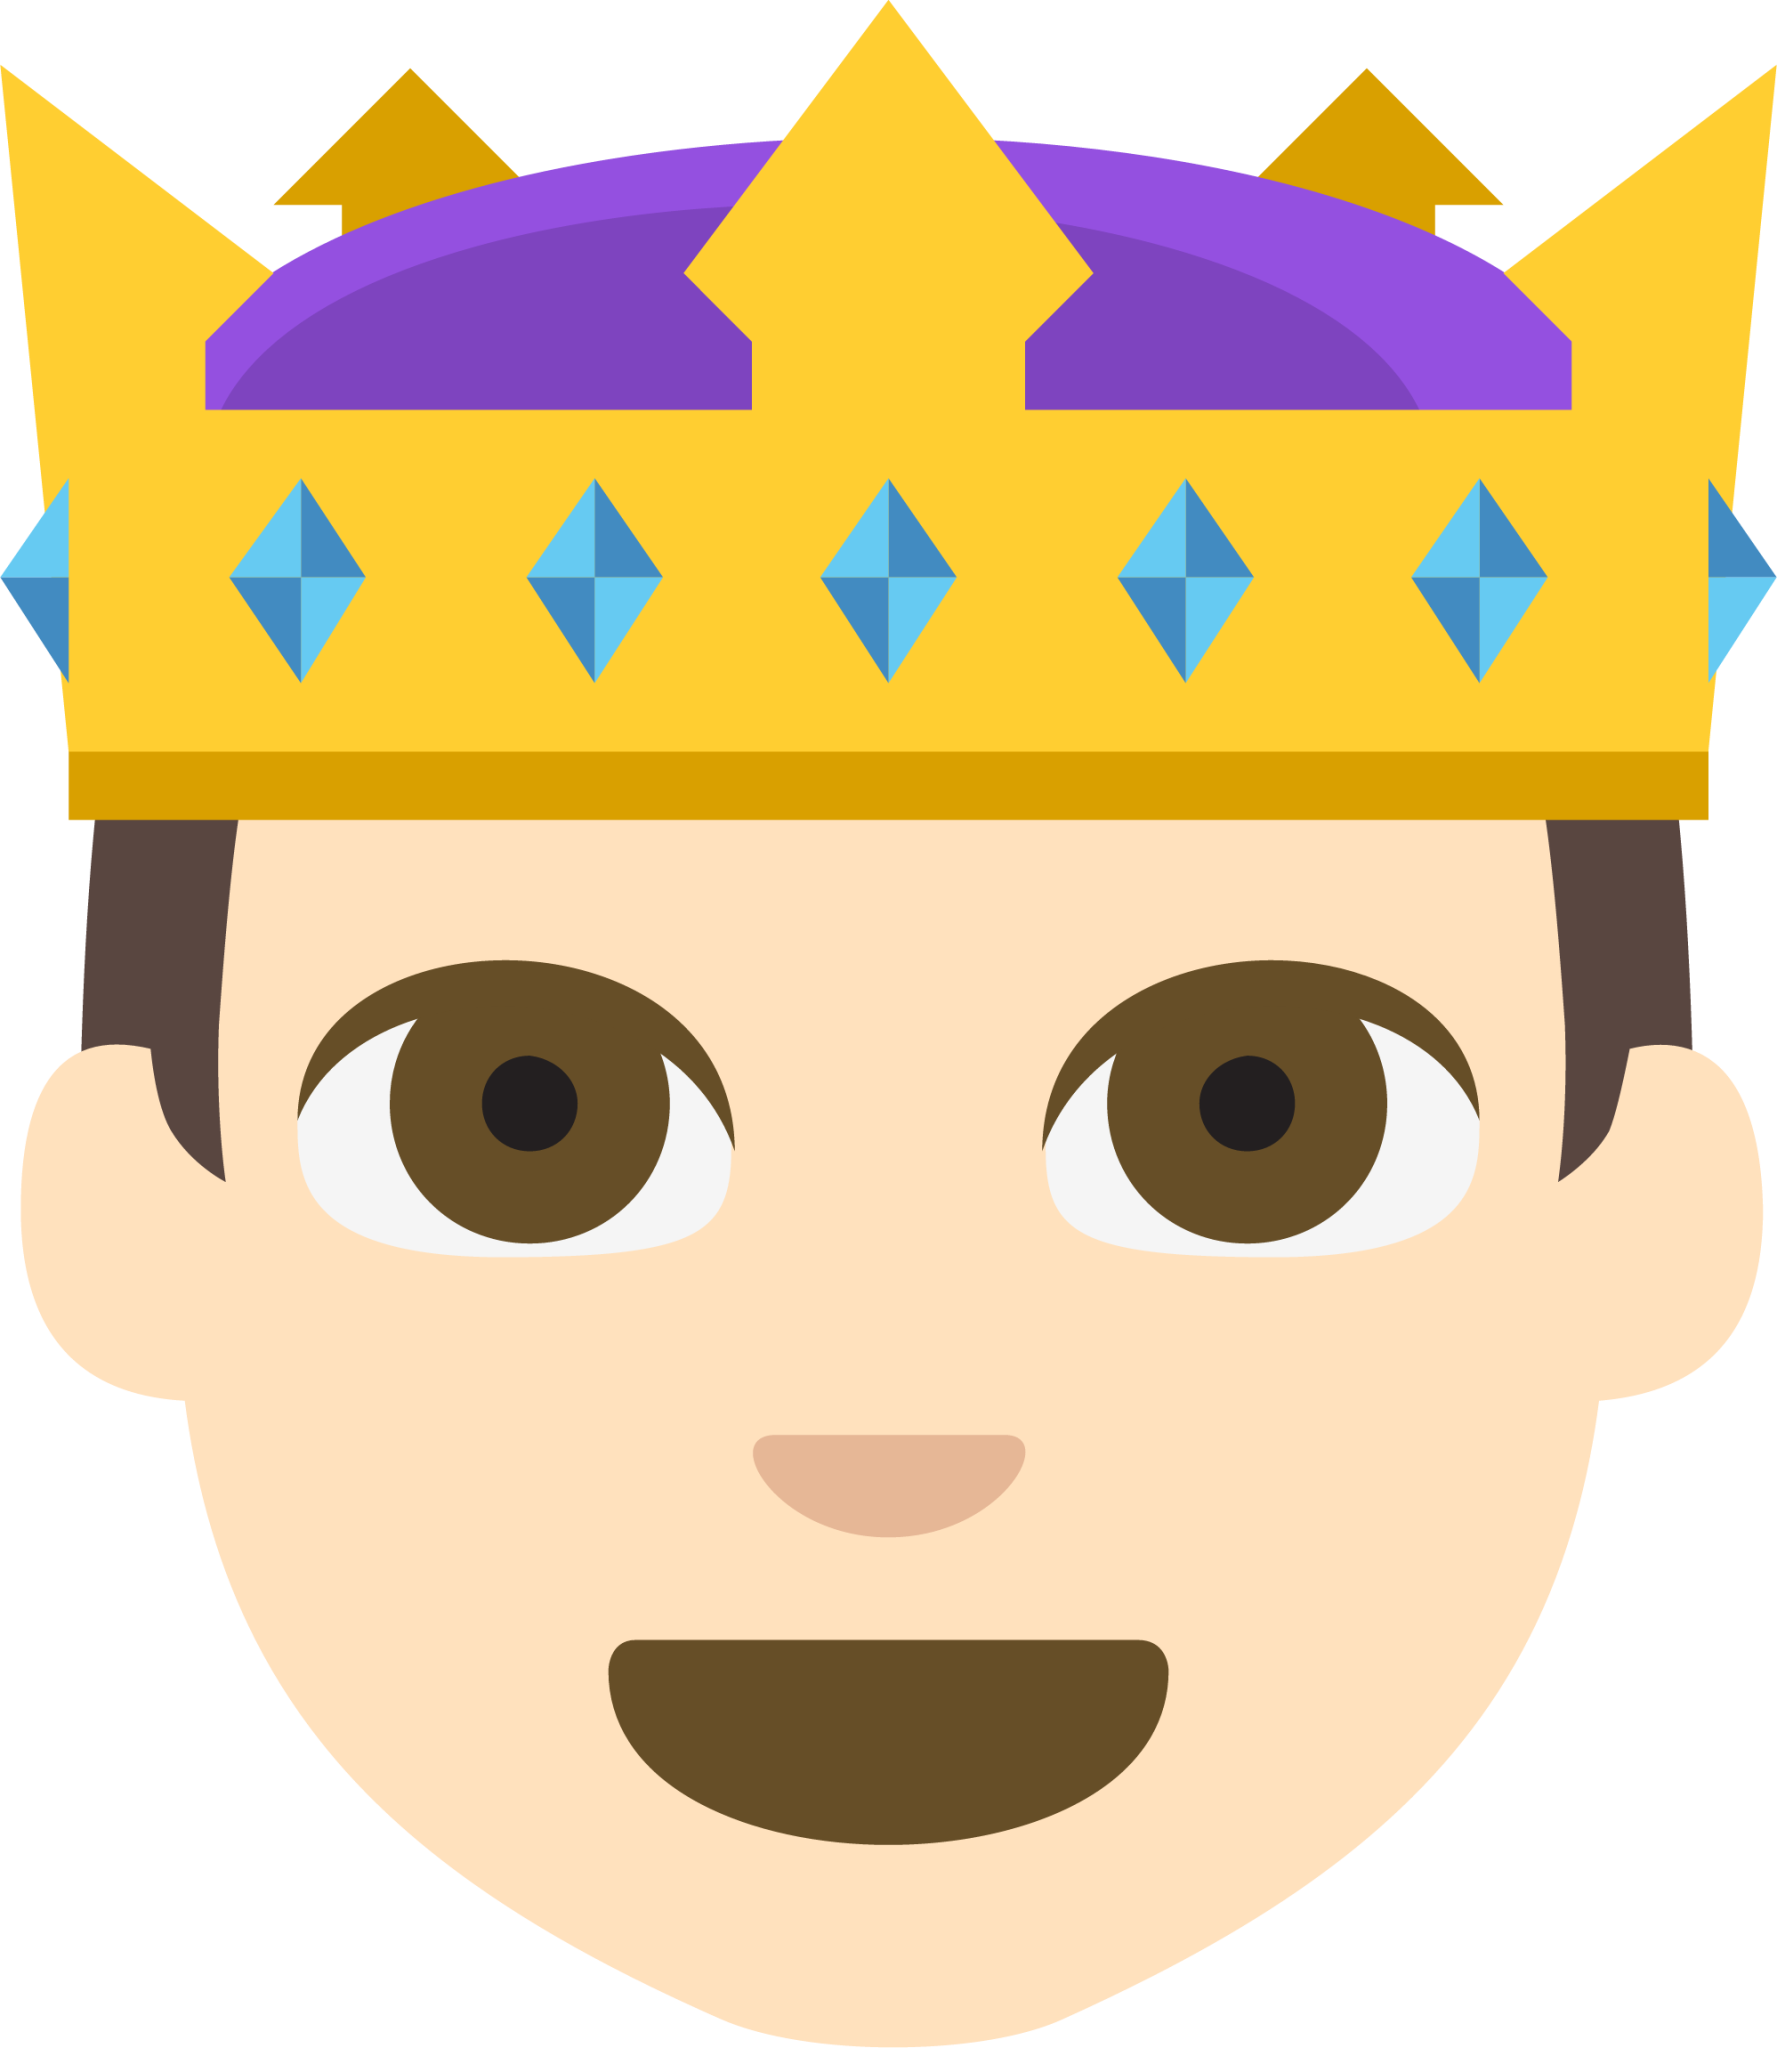 prince tone 1 emoji